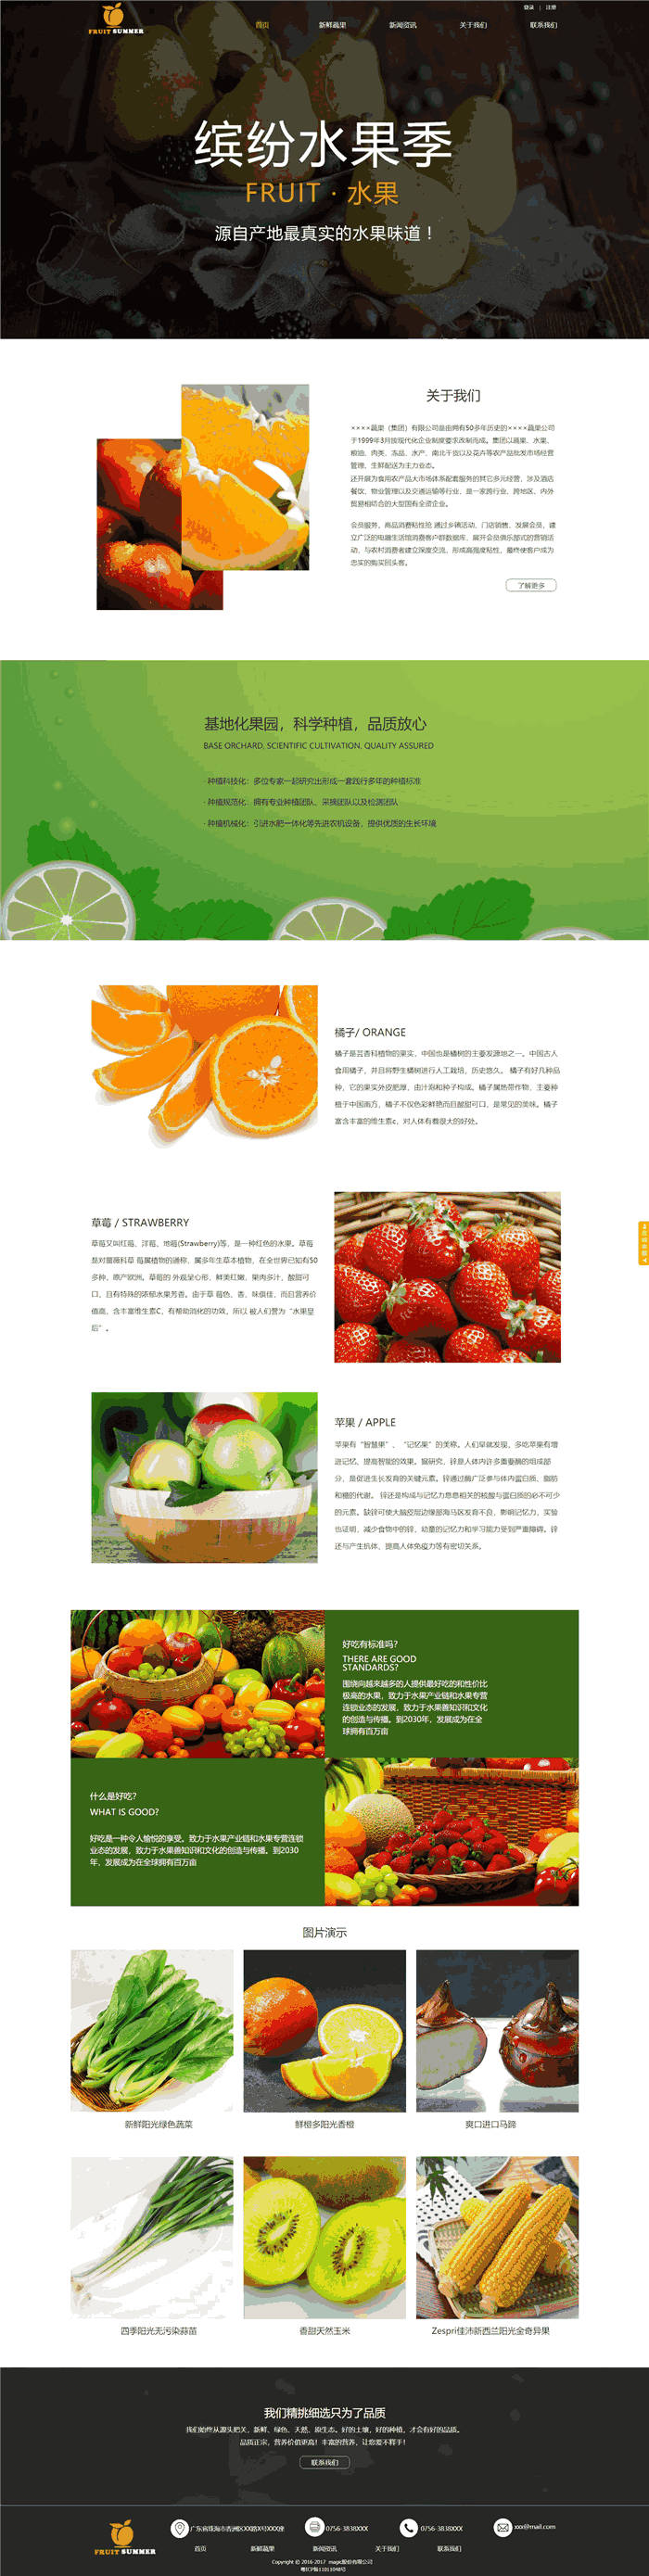 响应式食品饮料水果网站WordPress主题预览图